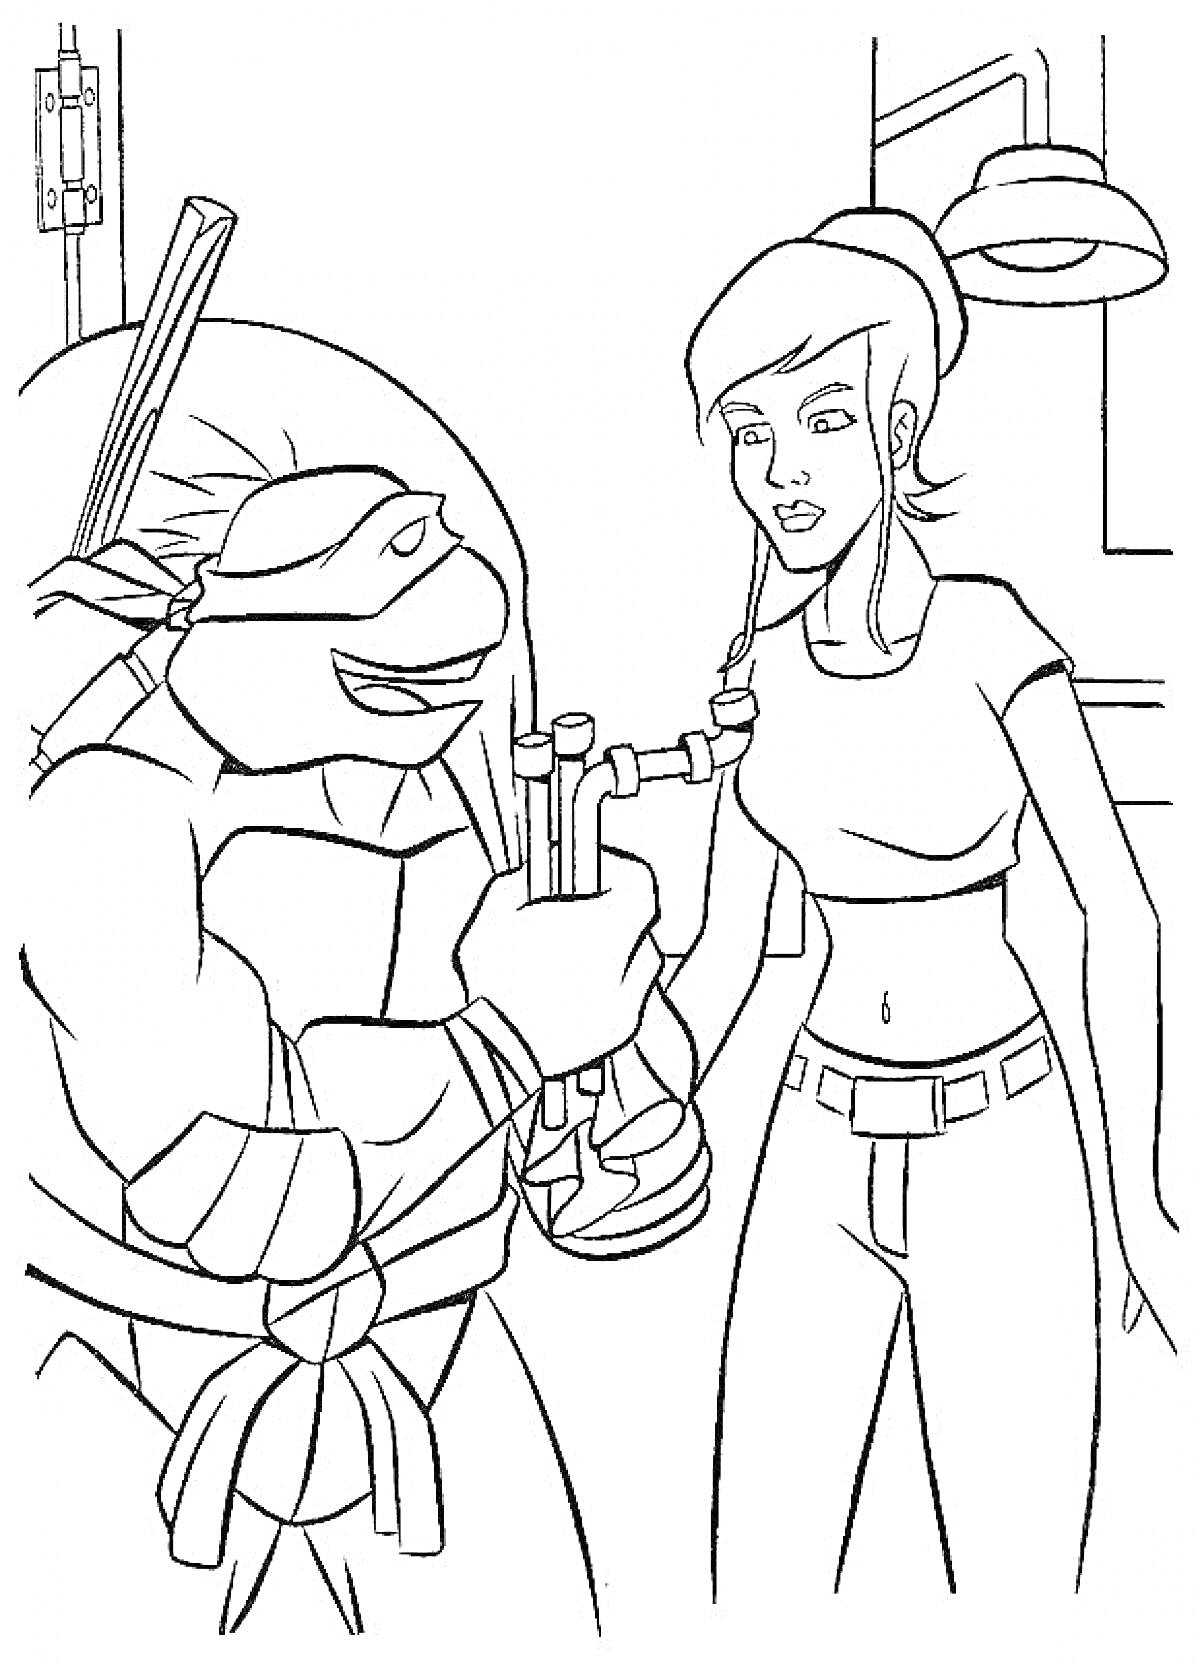 Черепашка-ниндзя и девушка в лаборатории, он держит пробирку, на фоне лампа и детали интерьера